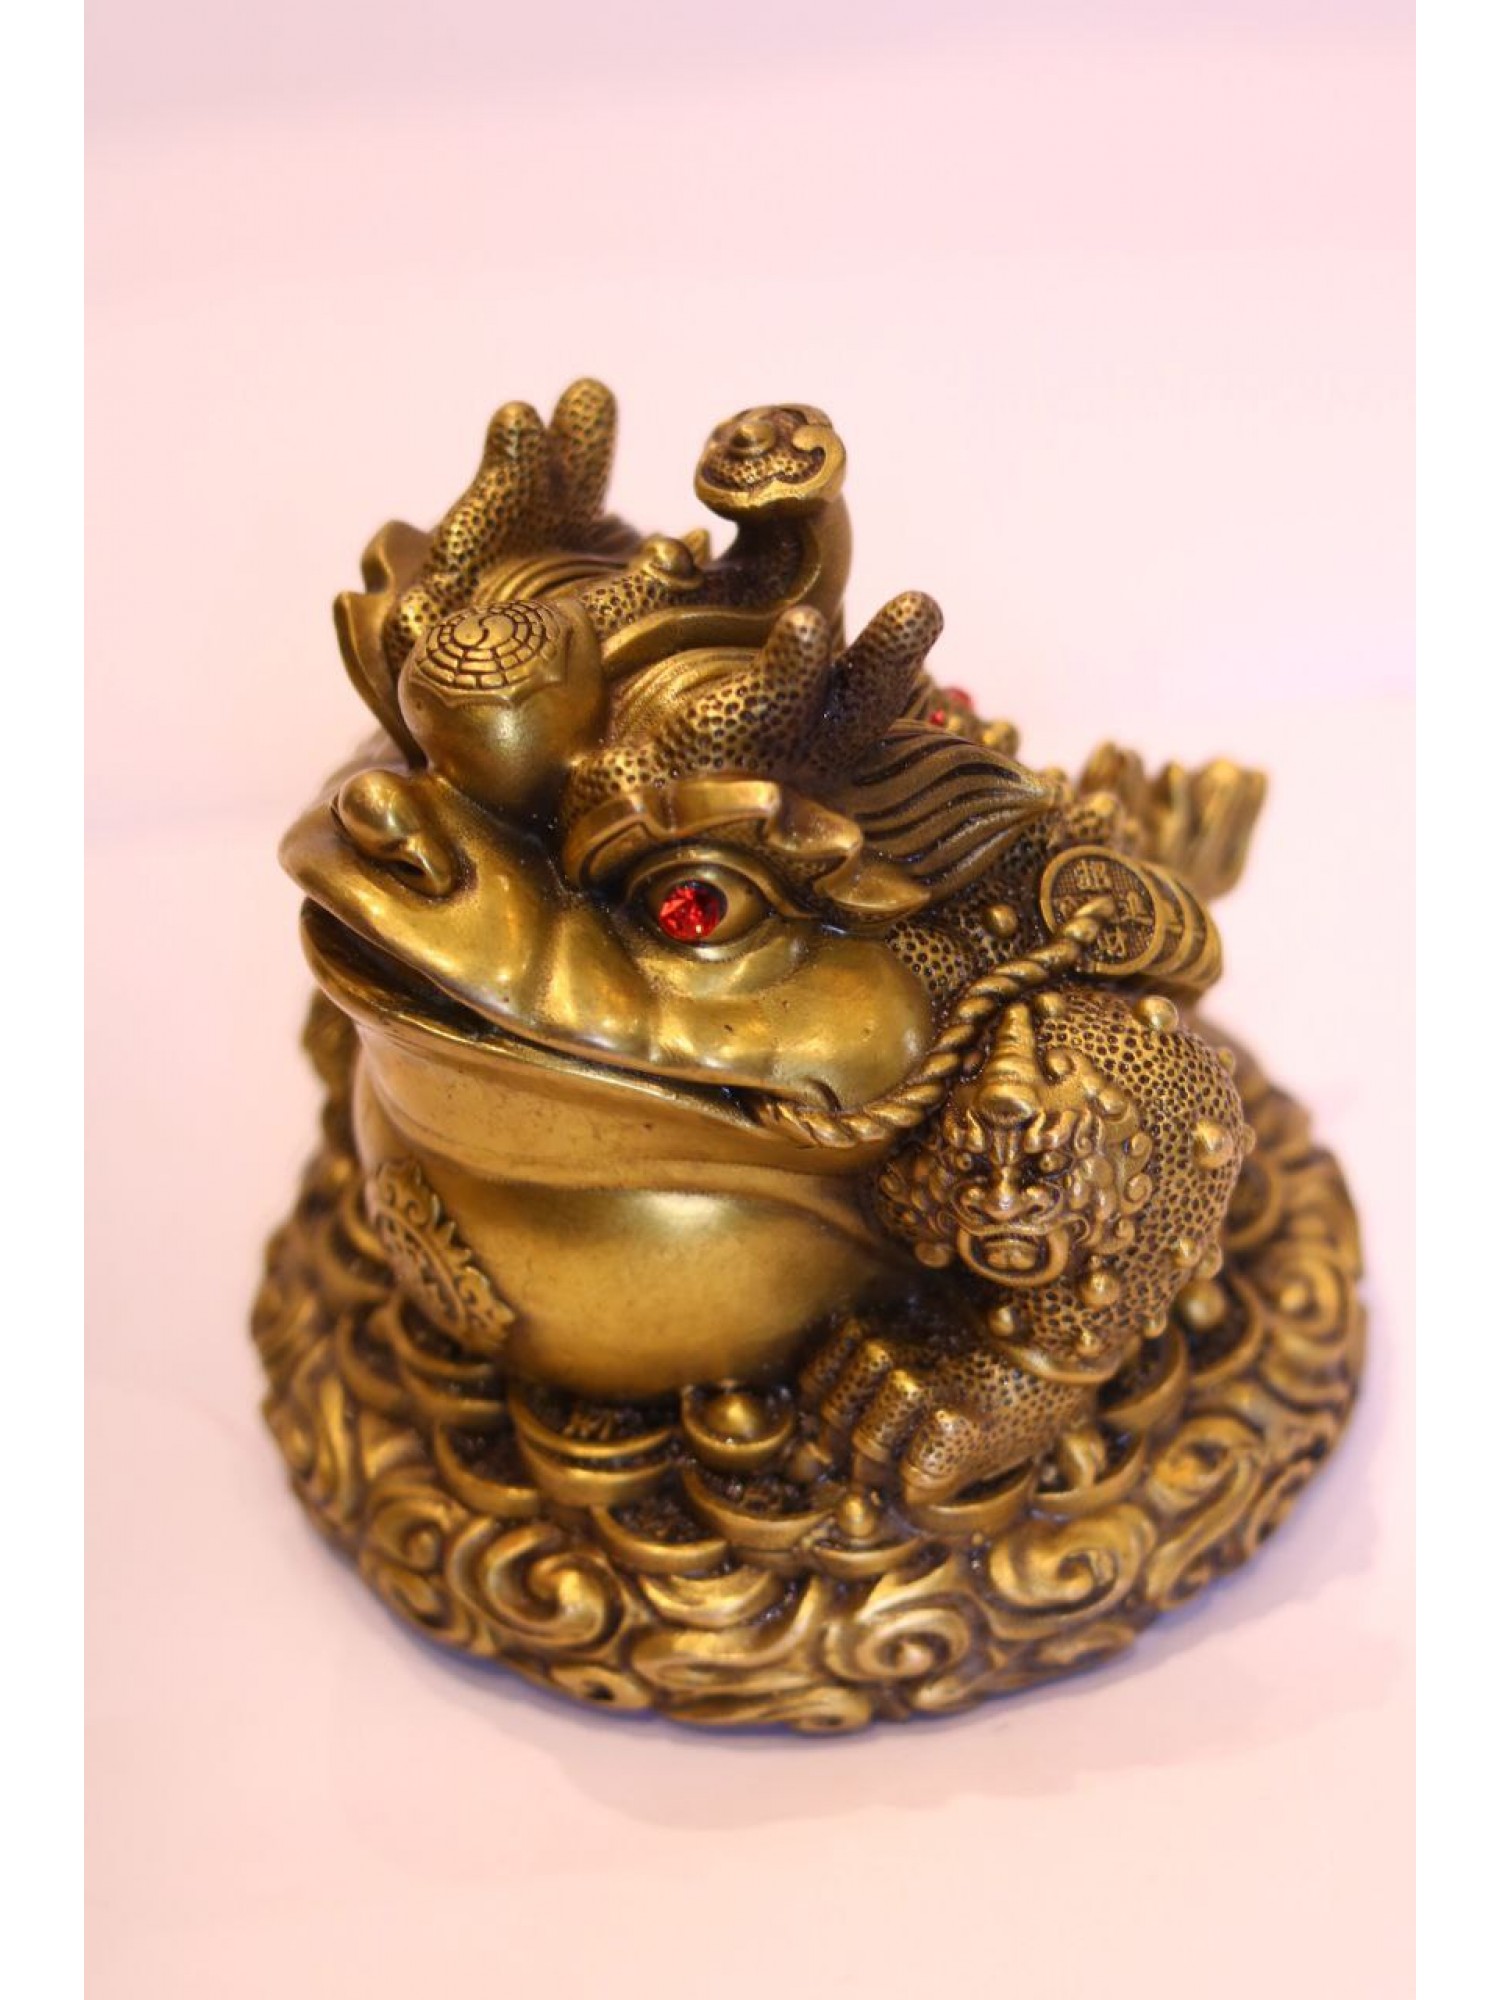 Статуэтка "Денежная жаба с посохом жуи" (бронза) помогает удачно совершать финансовые сделки!